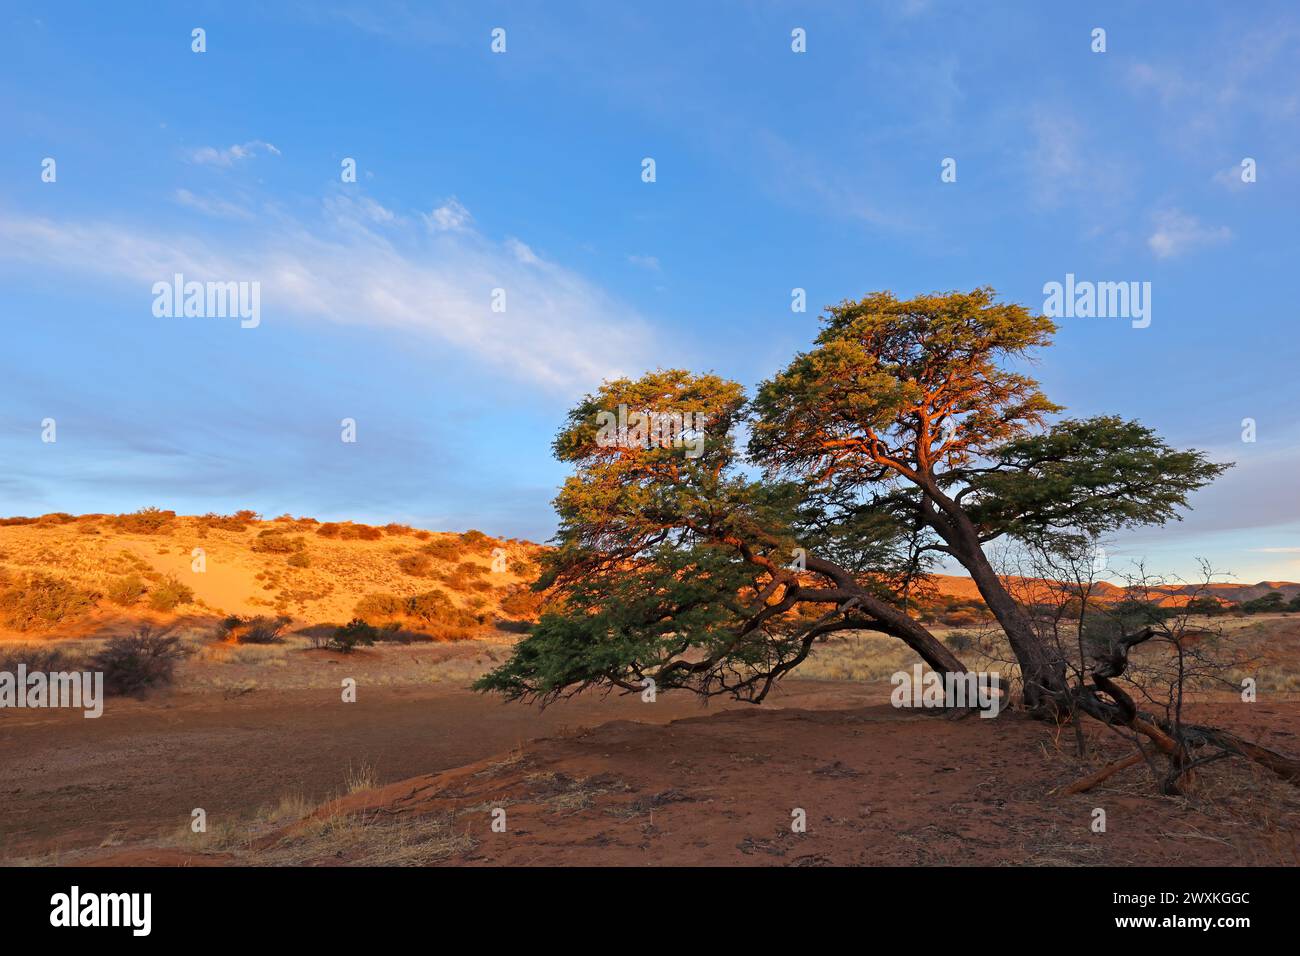 Paysage pittoresque avec un arbre d'épine et des dunes de sable rouge au coucher du soleil, désert du Kalahari, Afrique du Sud Banque D'Images